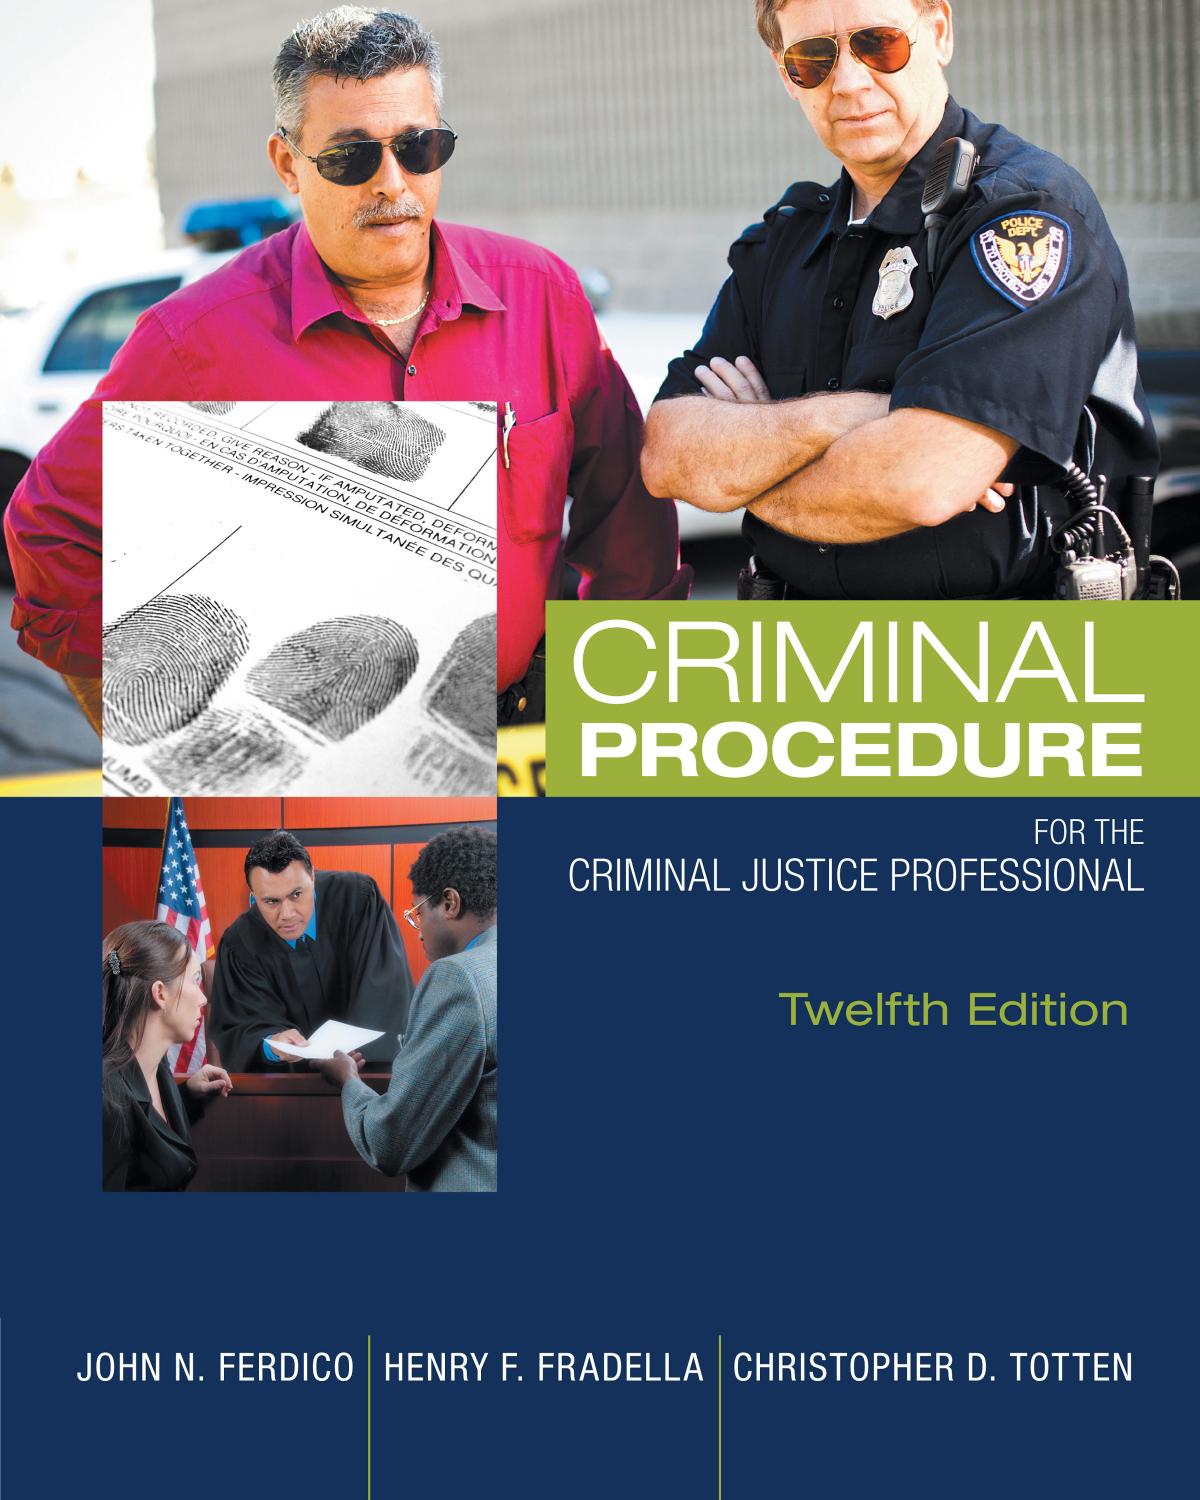 Criminal Procedure for the Criminal Justice Professional.jpg